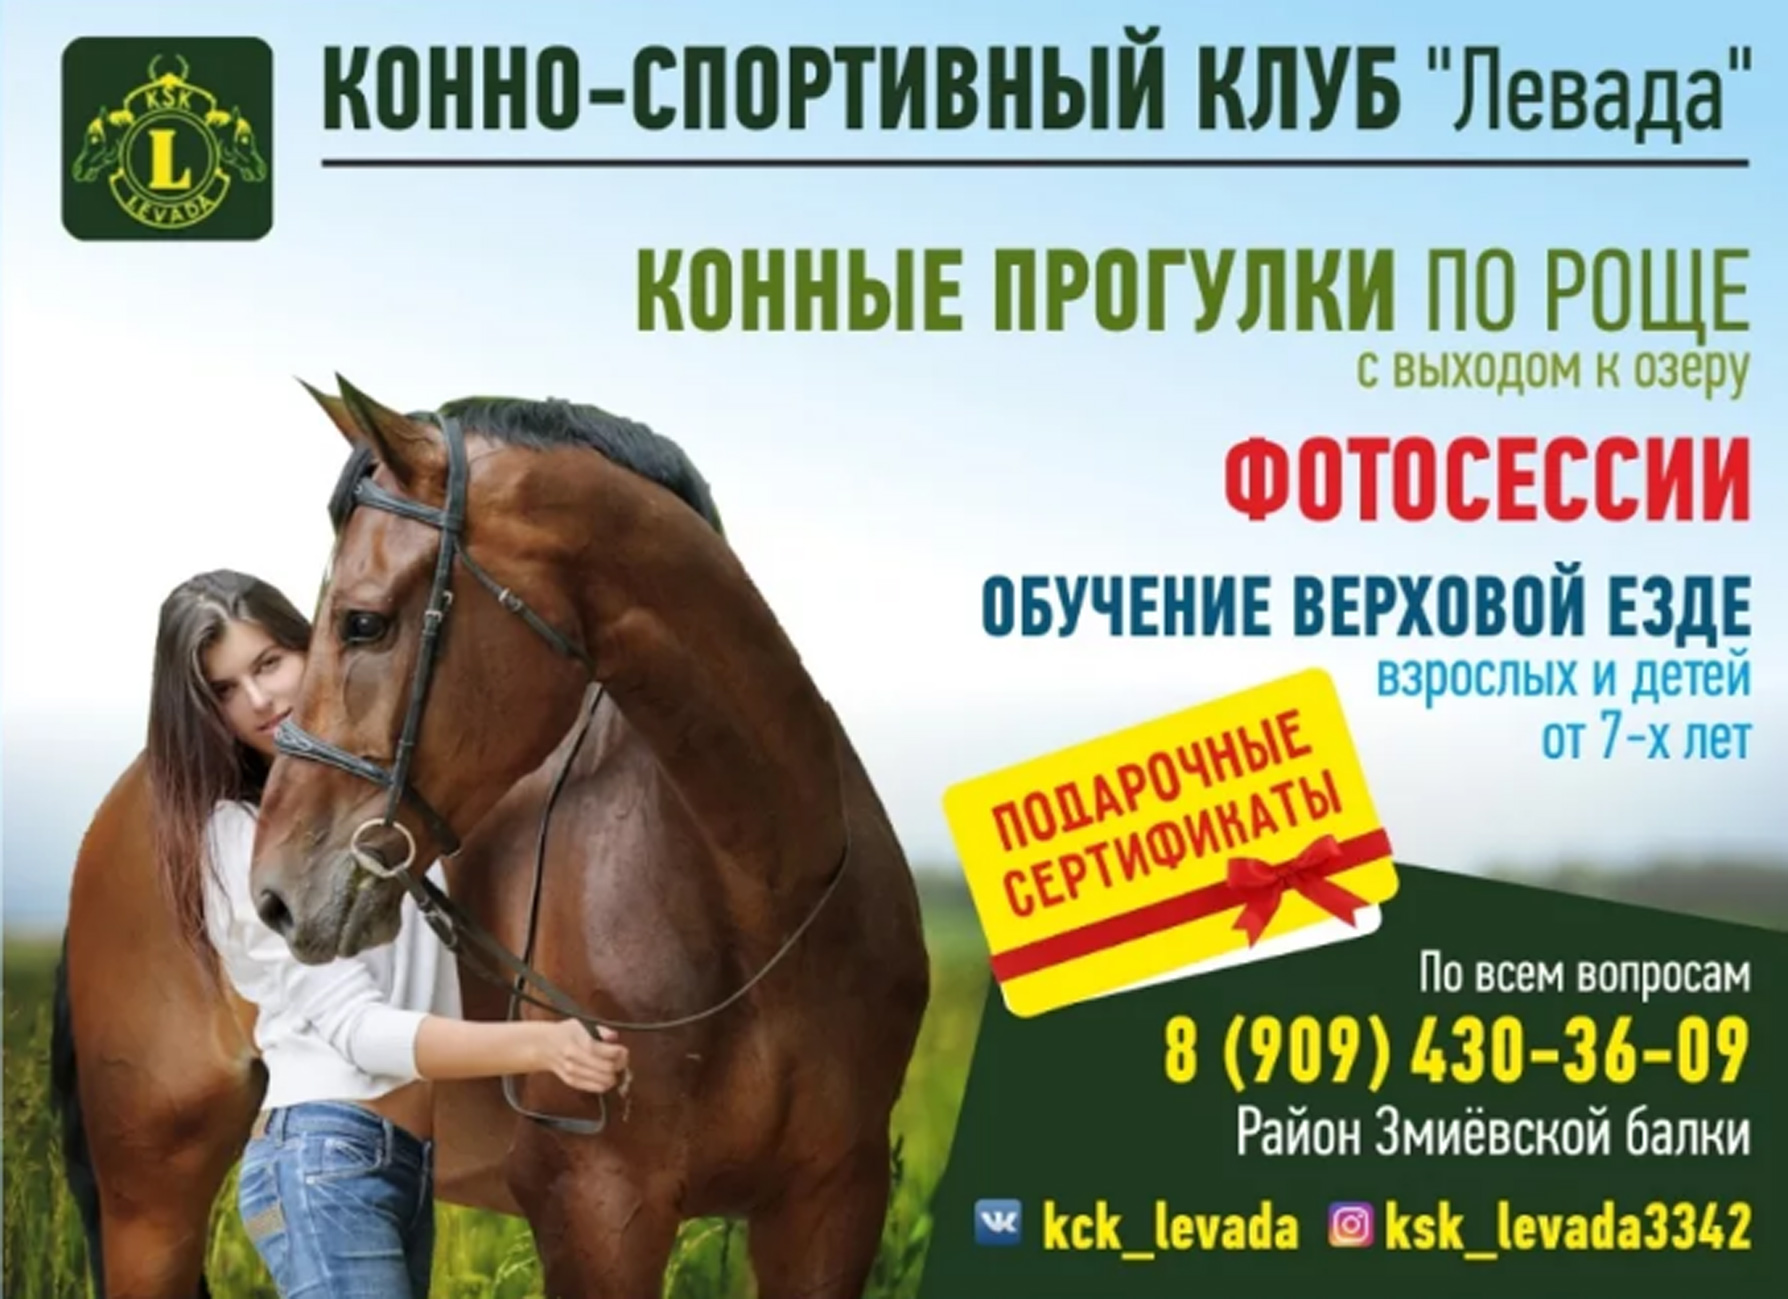 Реклама лошадок. Реклама конного клуба. Конные прогулки реклама. Реклама конного спорта. Конно-спортивный клуб реклама.